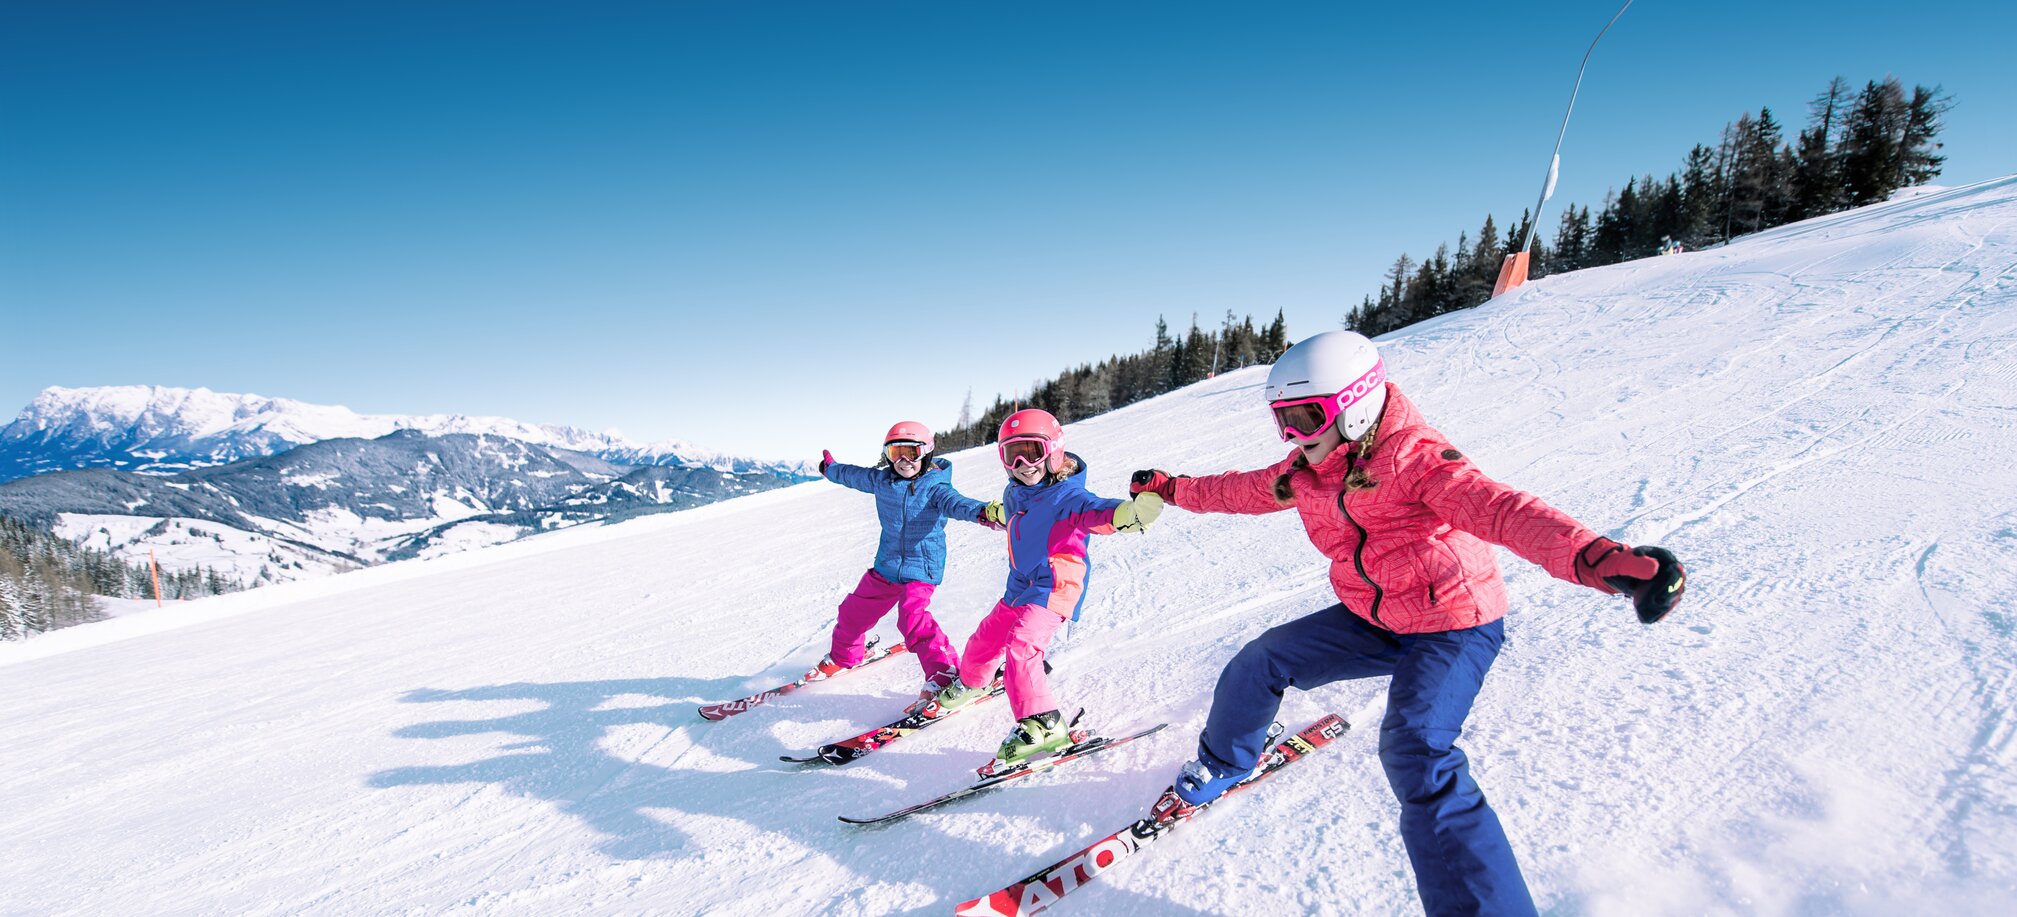 Drei Kinder halten sich an den Händen und fahren nebeneinander die Piste hinunter wobei sich die Skispitzen der einzelnen Kinder berühren und sie lachen dabei